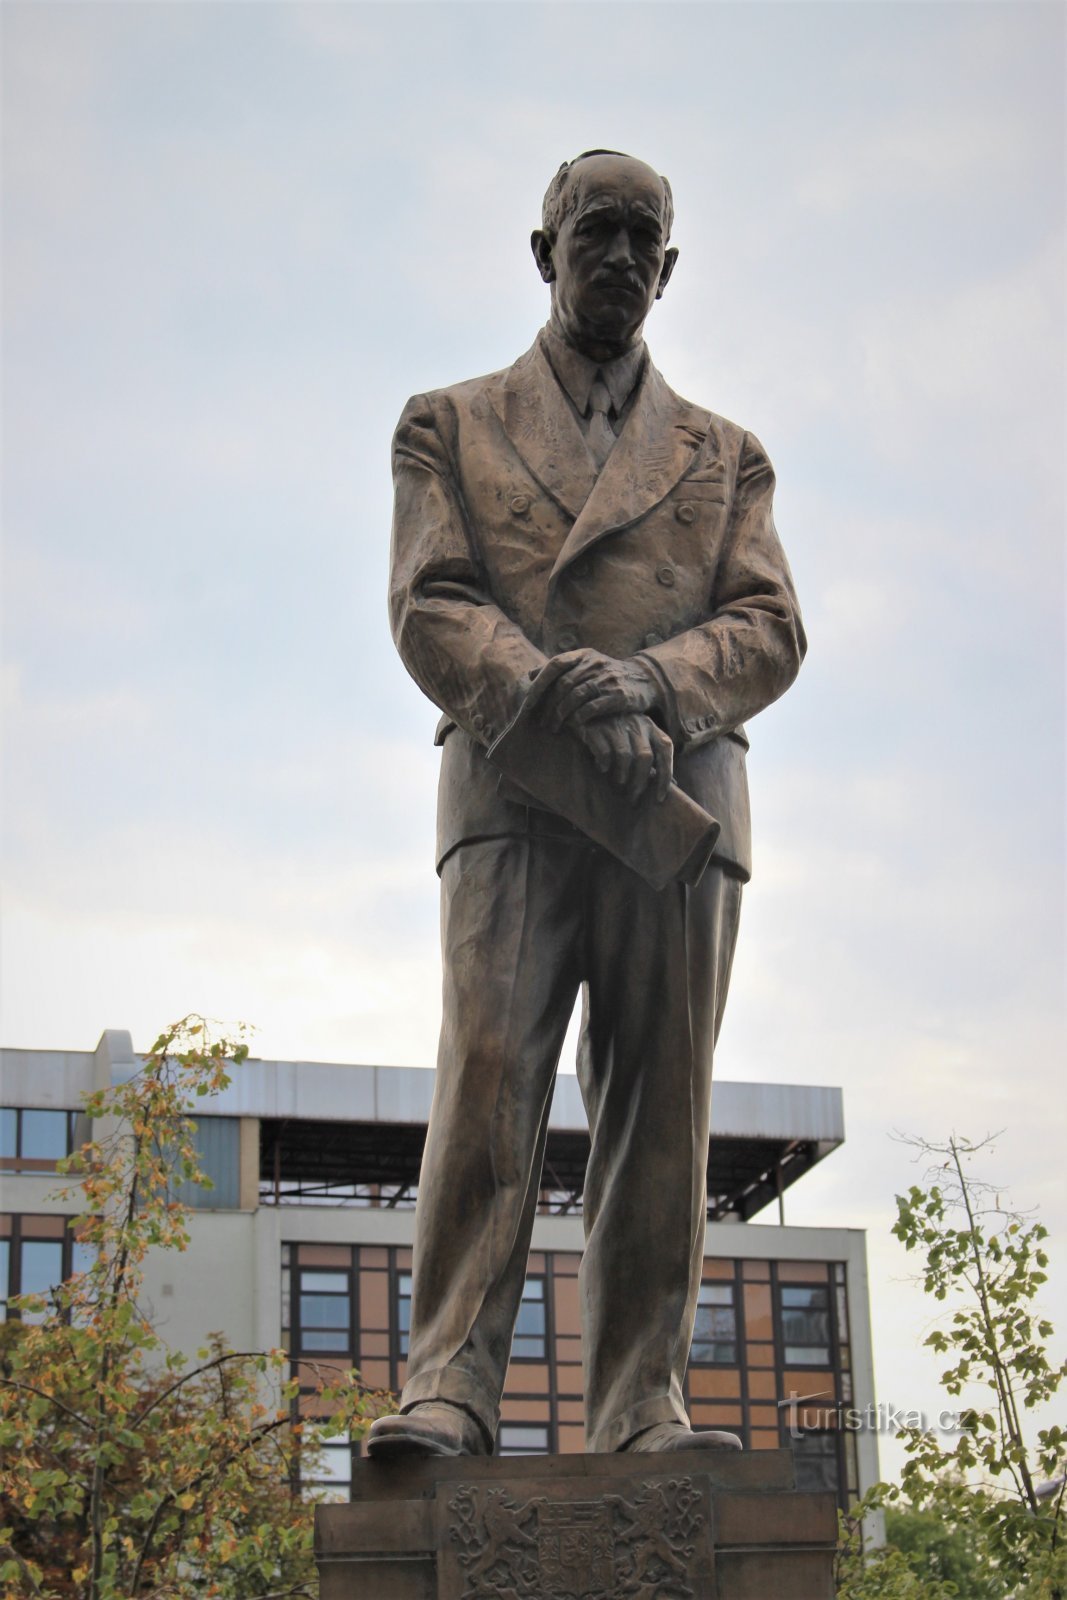 エドヴァルド・ベネシュの銅像